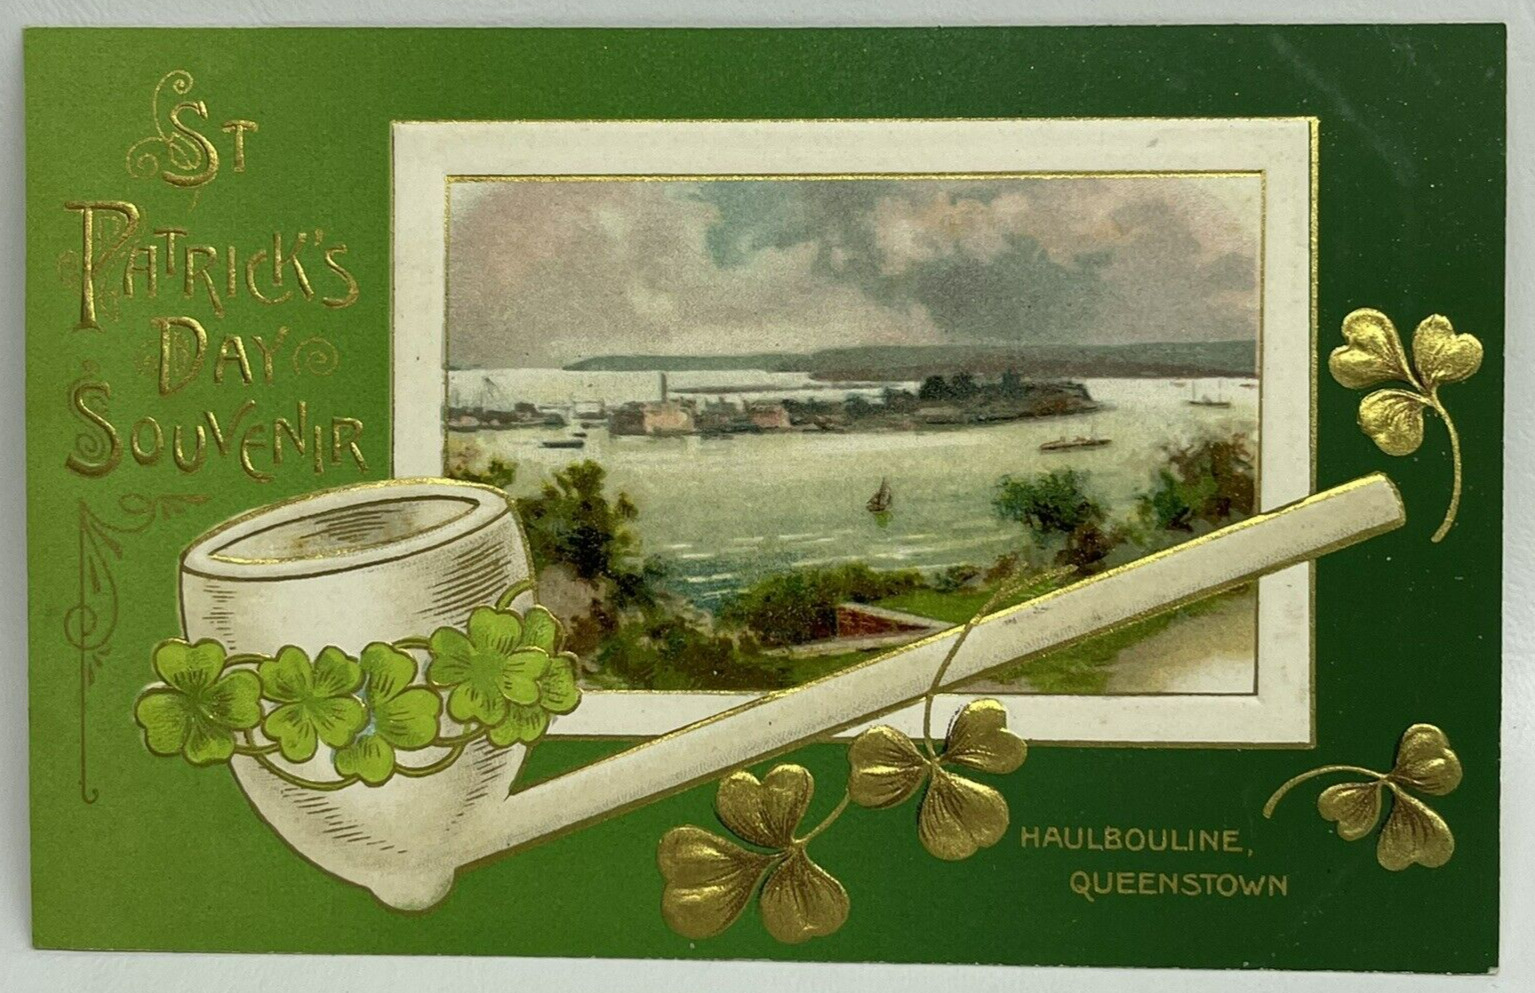 Vintage Postcard St Patrick’s Day Souvenir Haulbouline Queenstown